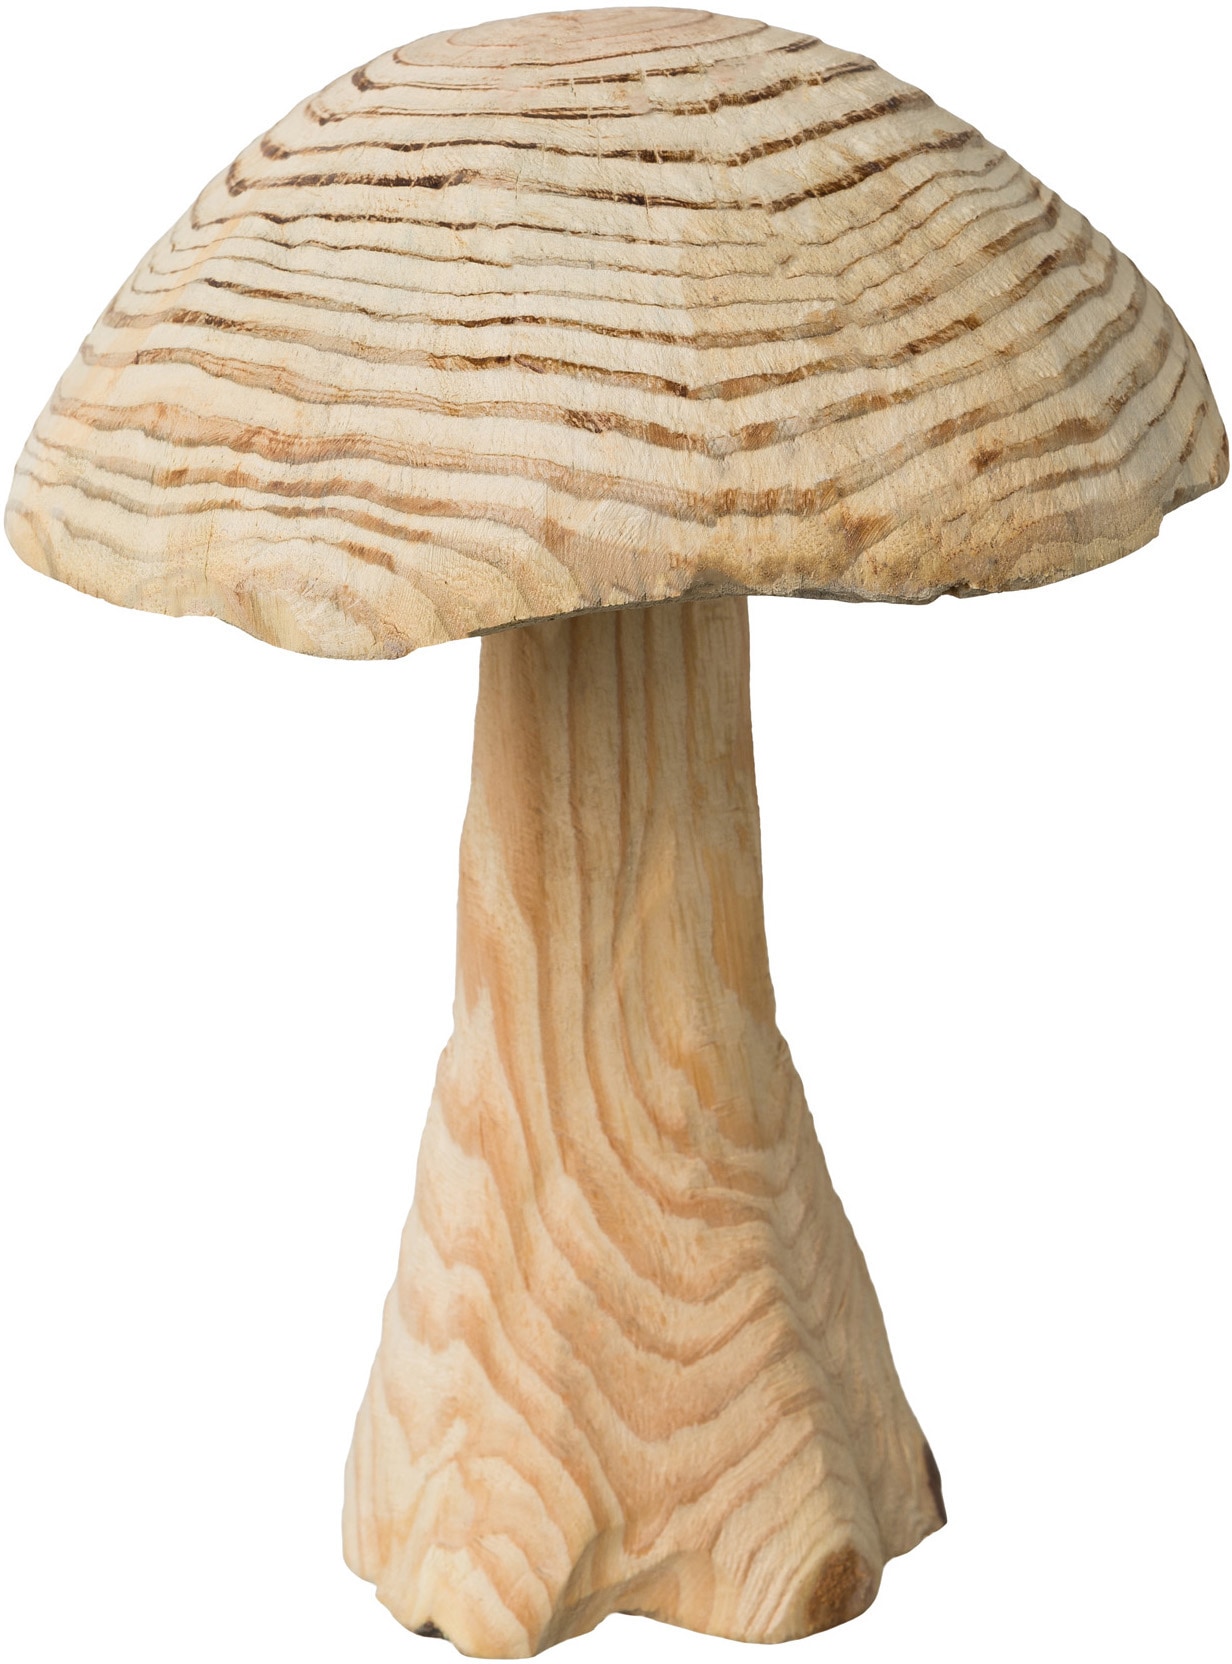 Dekoobjekt »Pilz, Weihnachtsdeko«, aus Tannenholz gefertigt